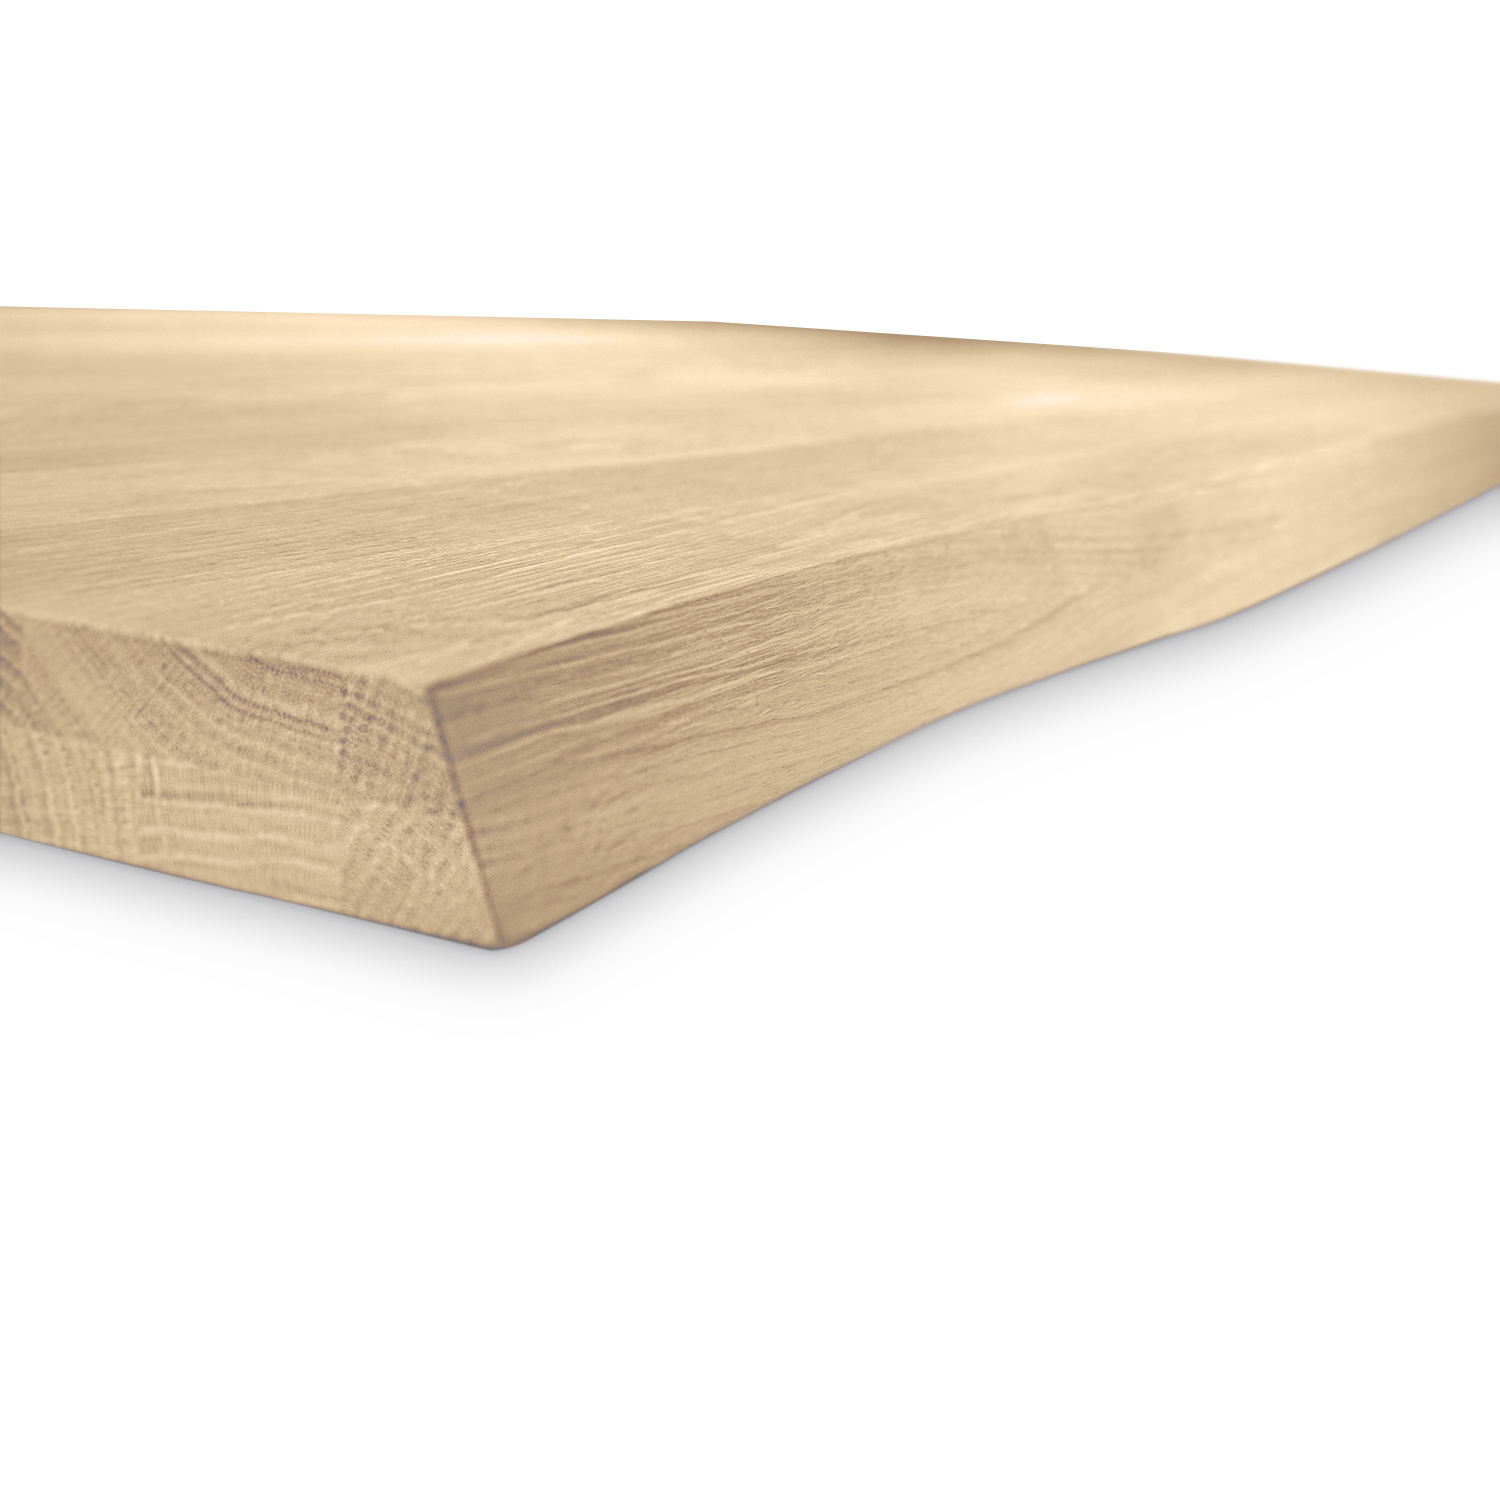  Tischplatte Eiche - mit Baumkante (Optik)  - 2,7 cm dick (1-Schicht) - Breite Lamellen (10 - 12 cm breit) - Eichenholz rustikal - verleimt & künstlich getrocknet (HF 8-12%) - verschiedene Größen